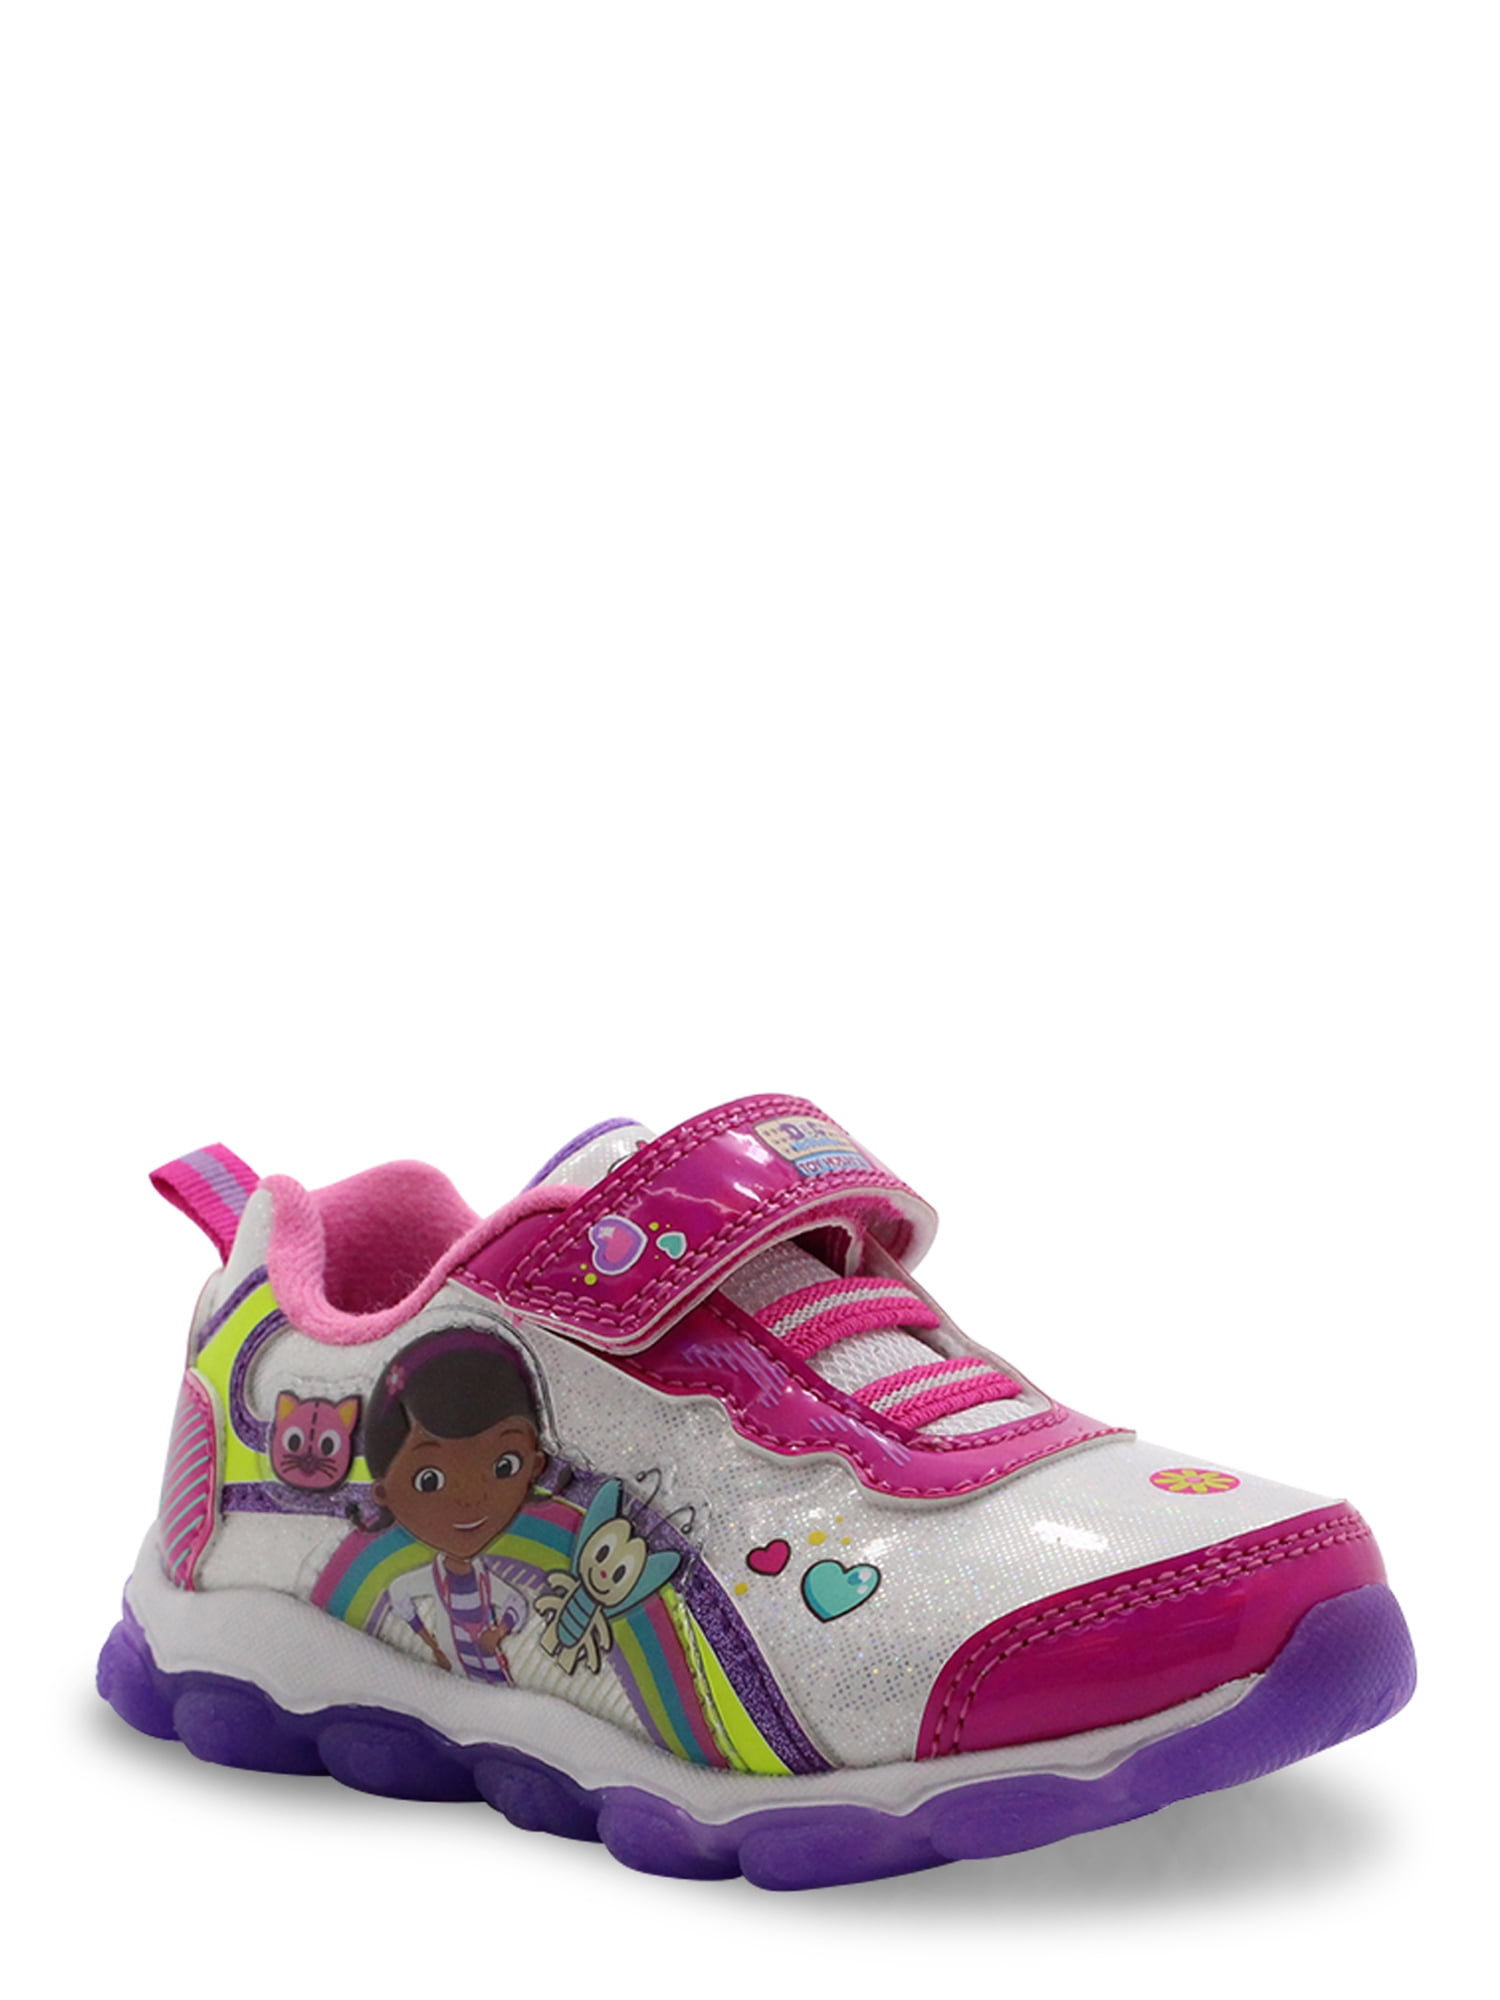 Disney Junior Doc Mcstuffins Light up Shoes Size 12 